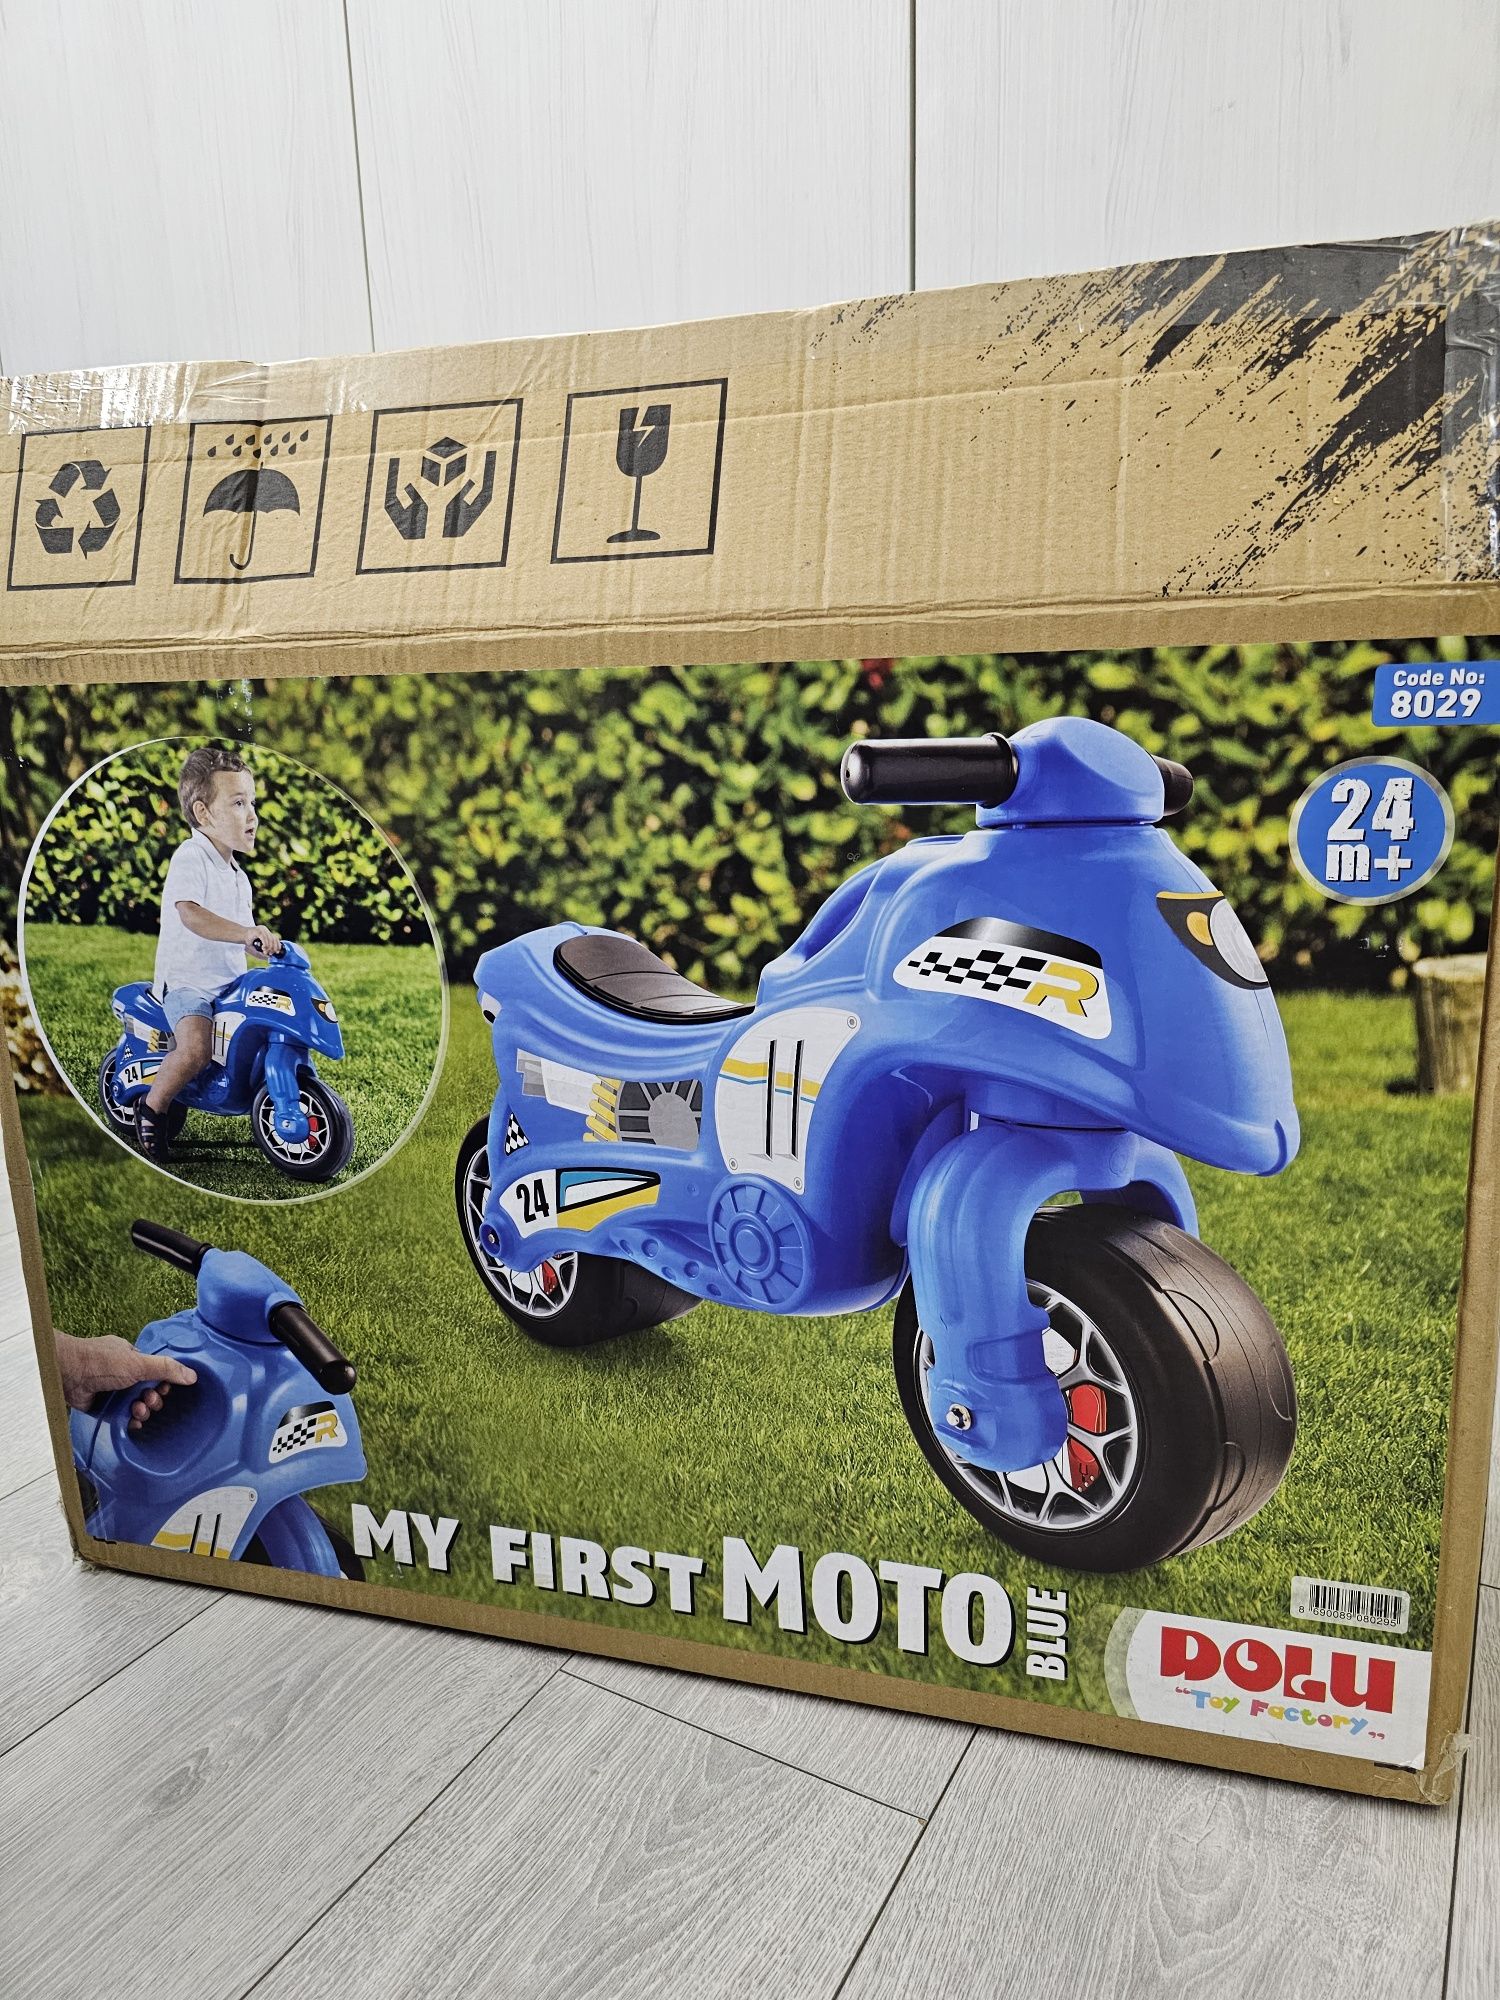 Детско моторче в син цвят